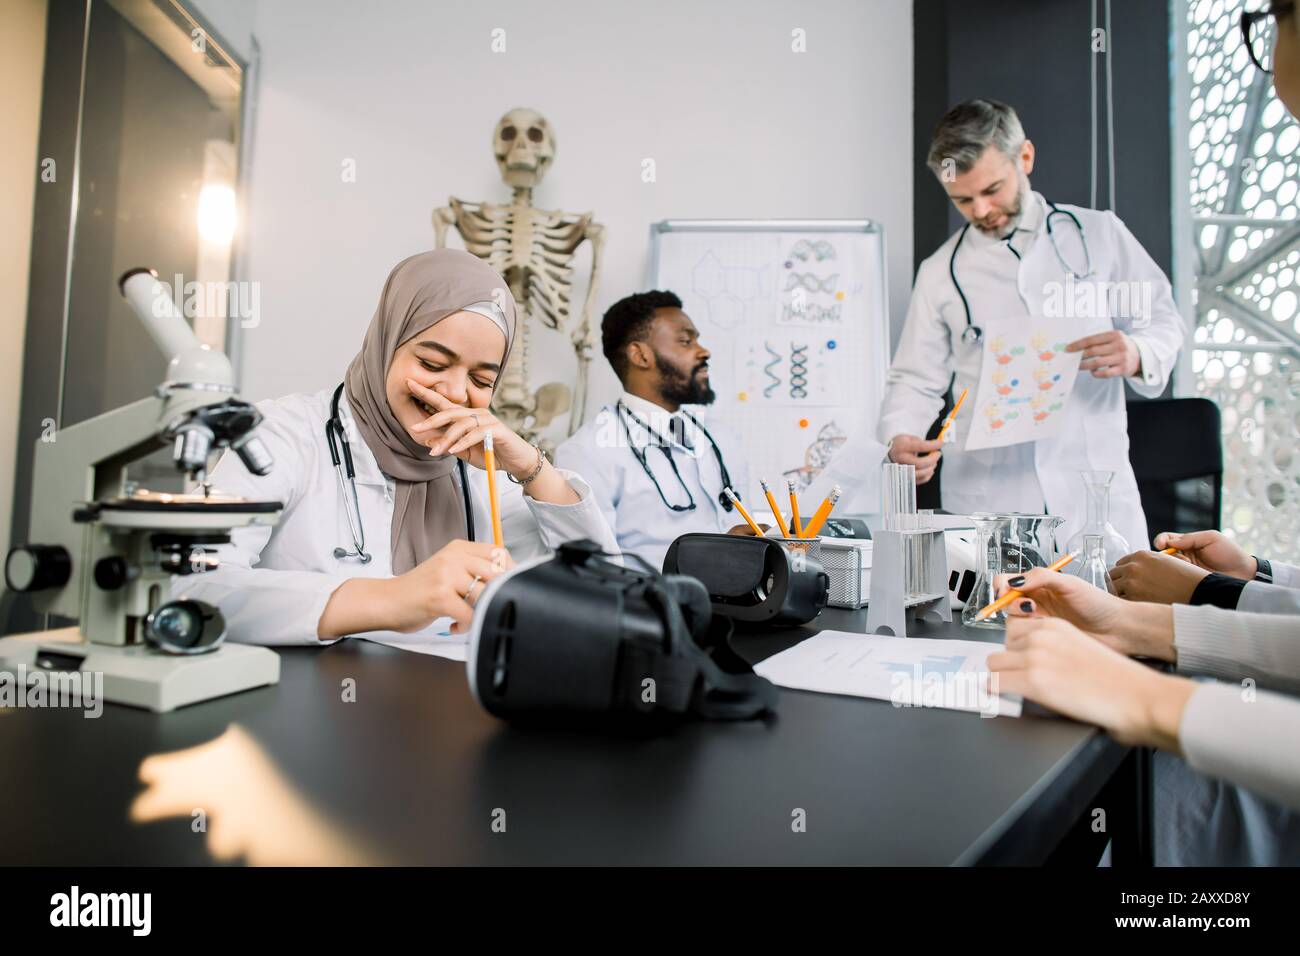 Hermoso profesor masculino con estudiantes de medicina multiétnica o científicos que usan batas de laboratorio en el salón de clase. Joven y bonita niña musulmana es feliz y sonriente Foto de stock